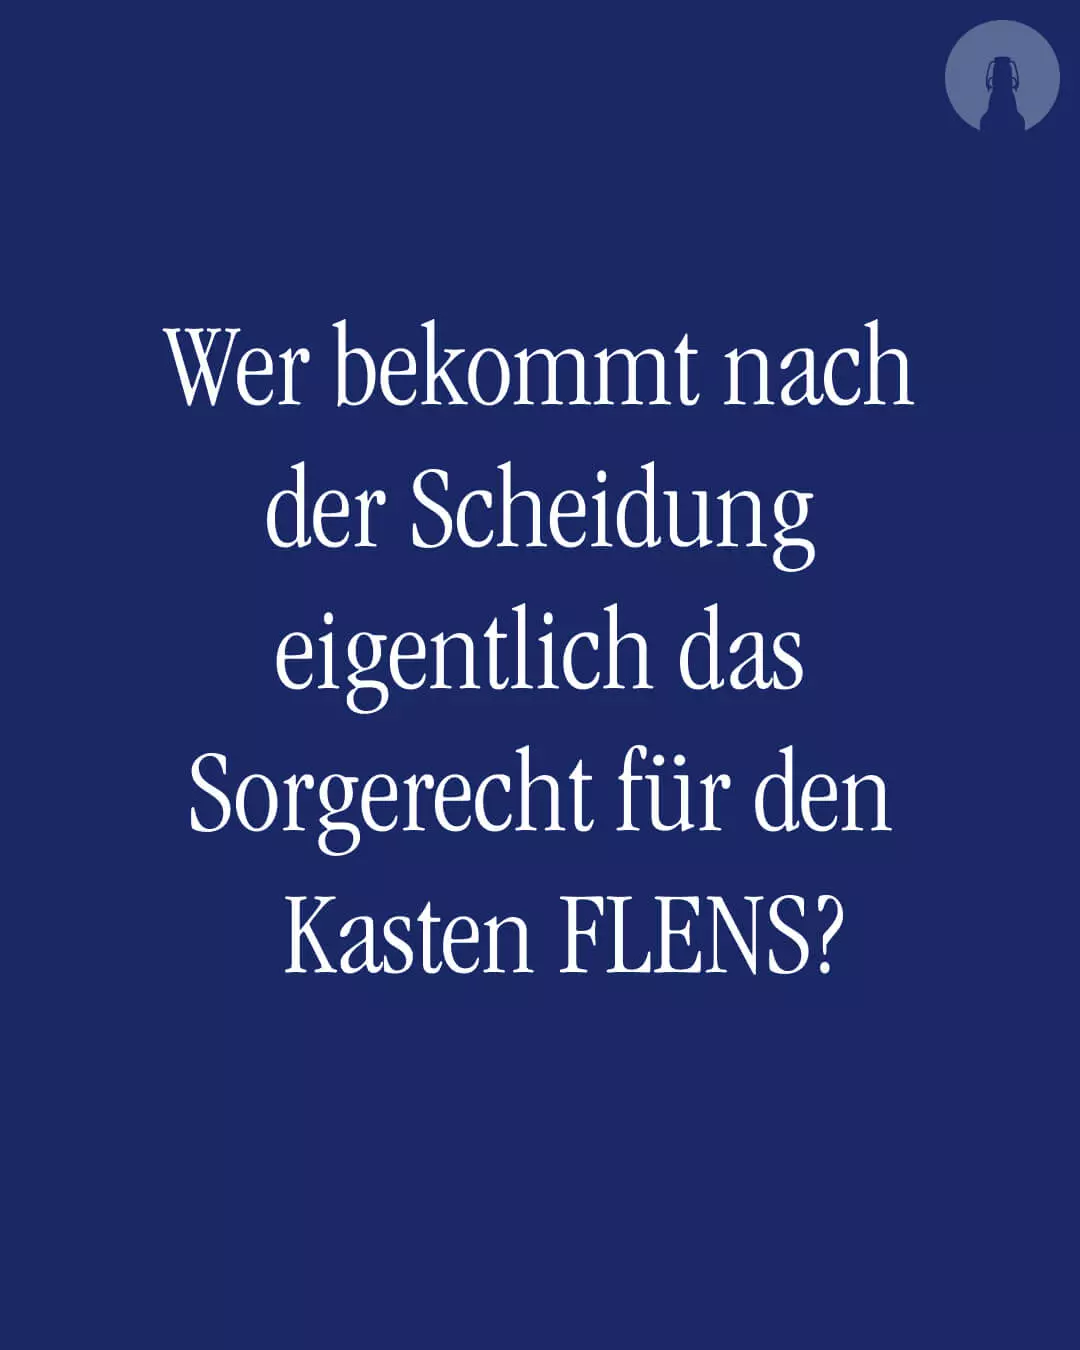 Weißer Text auf FLENS blauem Hintergrund: Wer bekommt nach der Scheidung eigentlich das Sorgerecht für den Kasten FLENS?